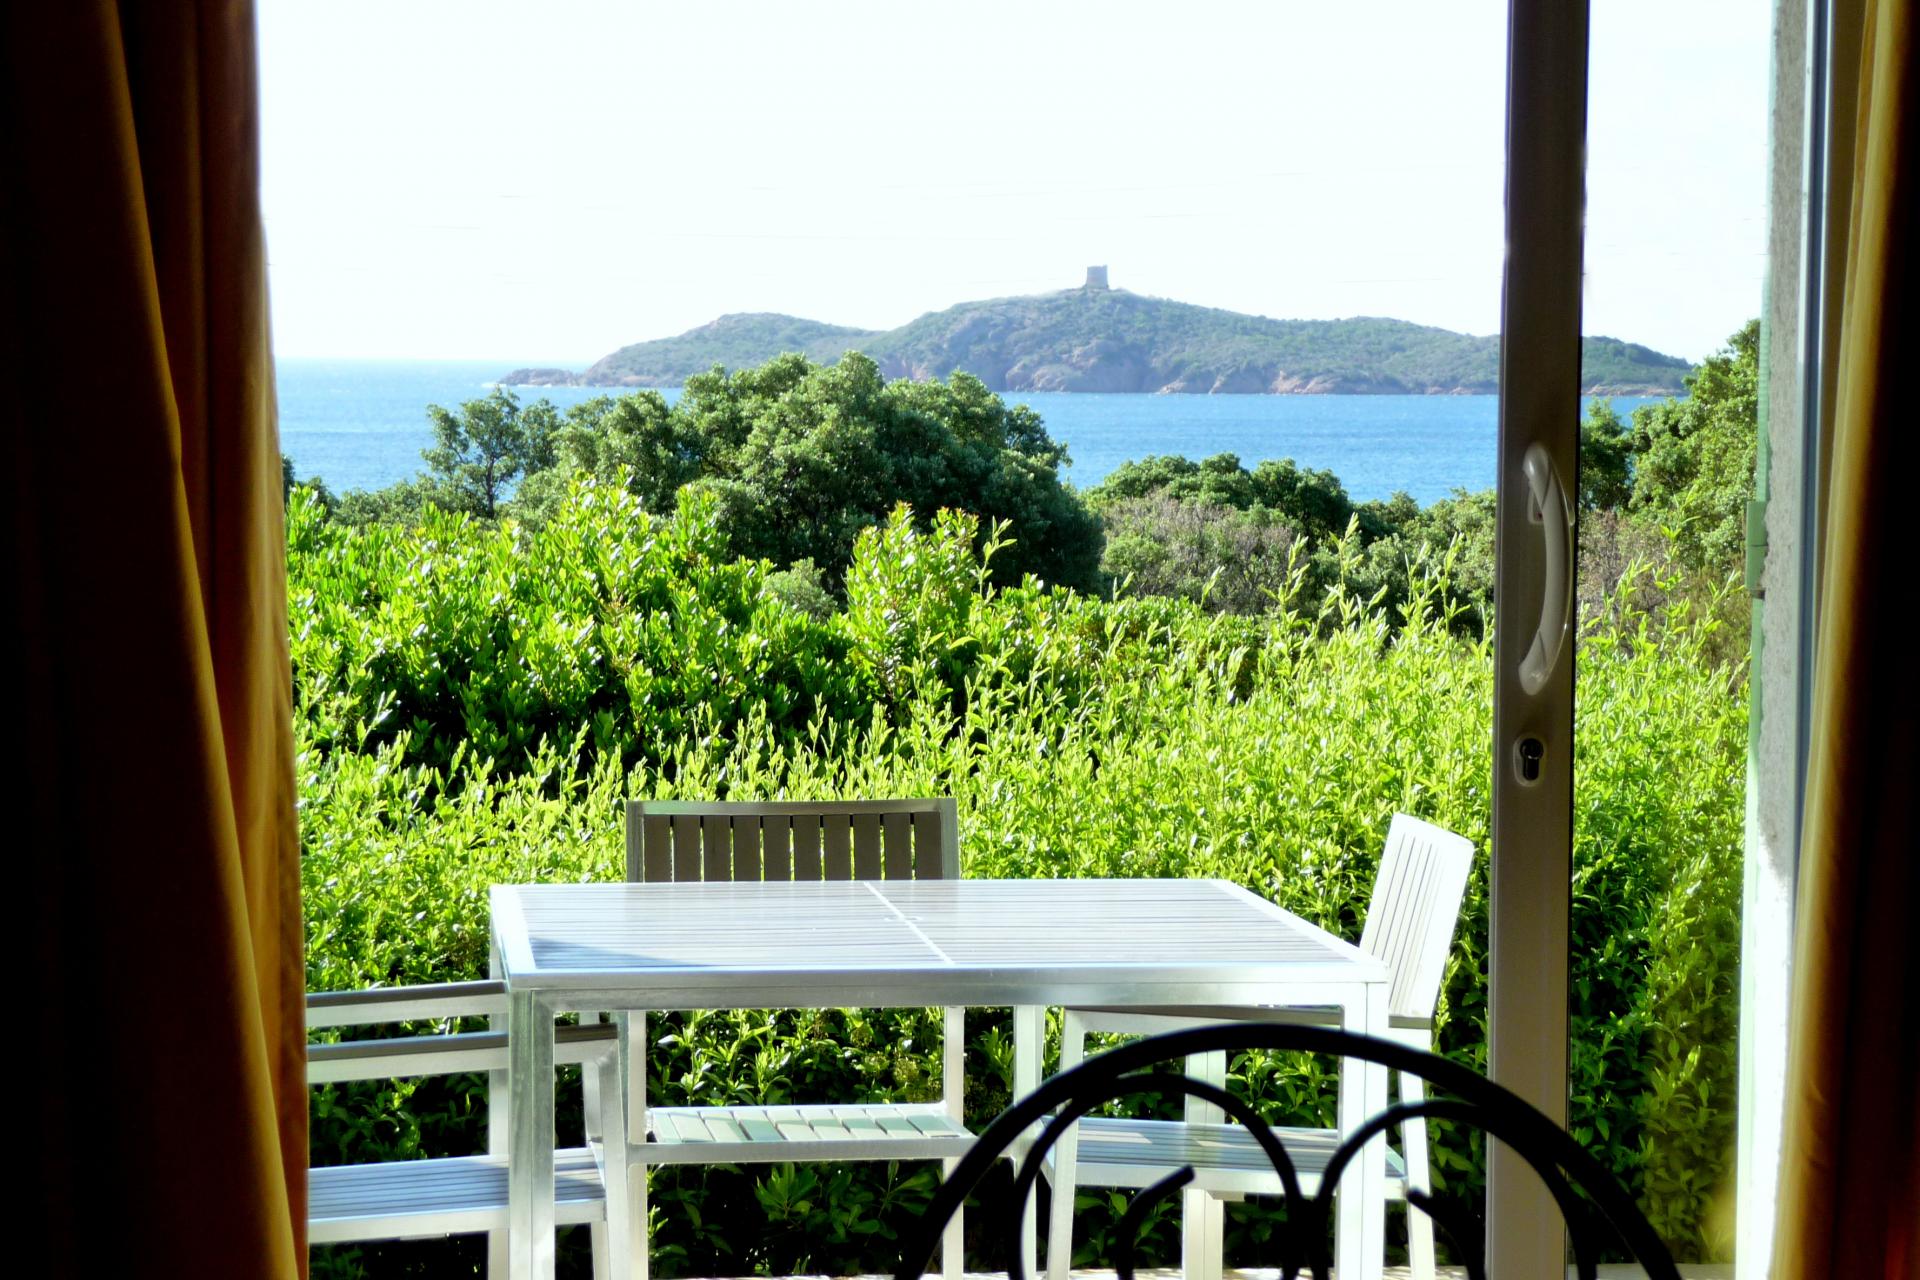 Maison vacances Corse du sud vue mer